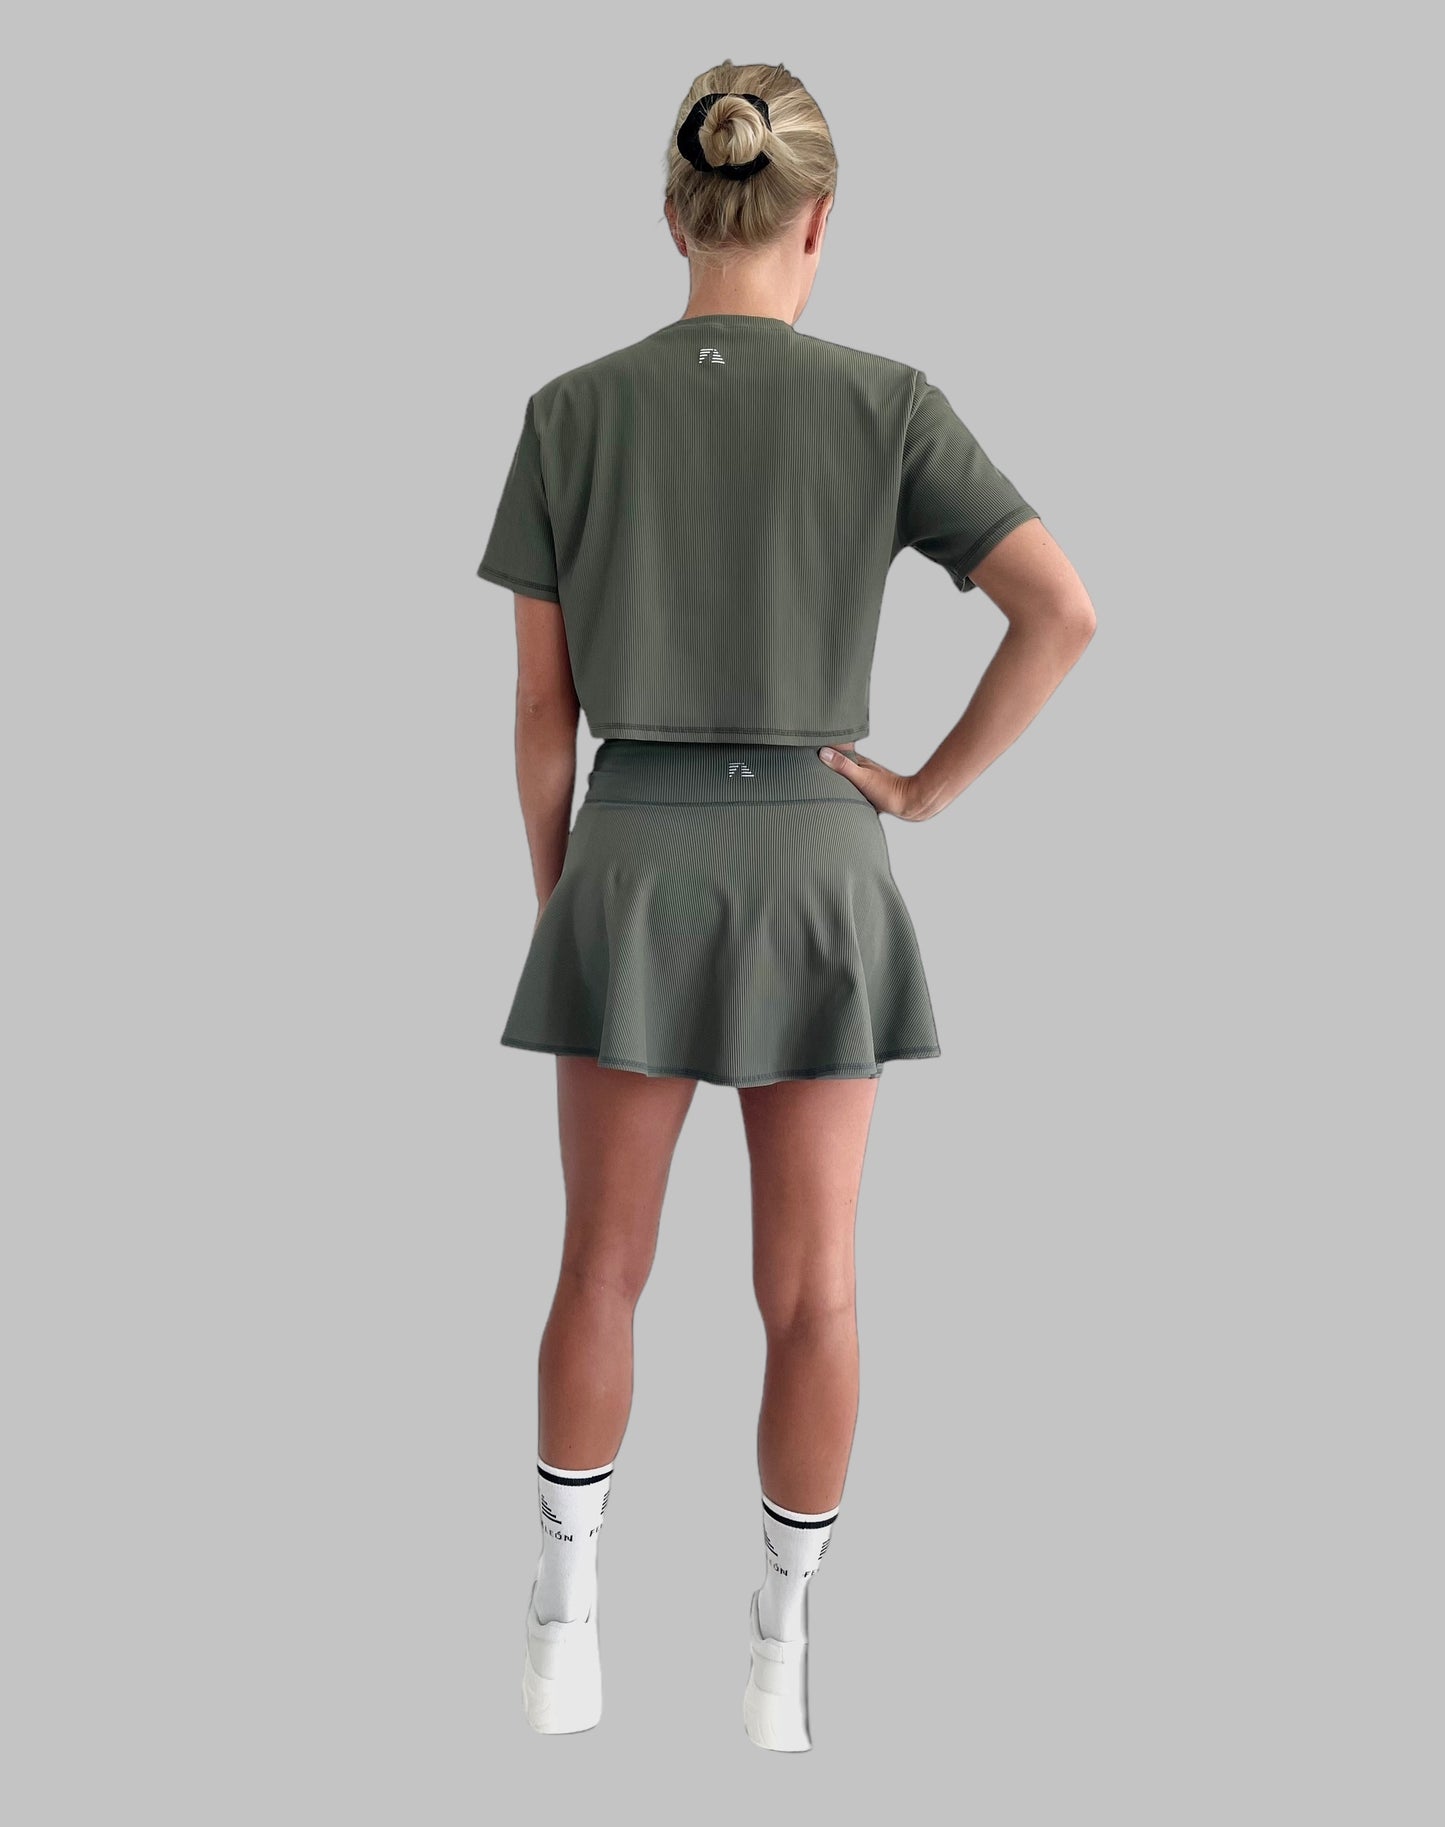 Helkroppsbild bakifrån av en modell klädd i ett matachande grönt set, padelkjol och träningströja i ribbat material. 